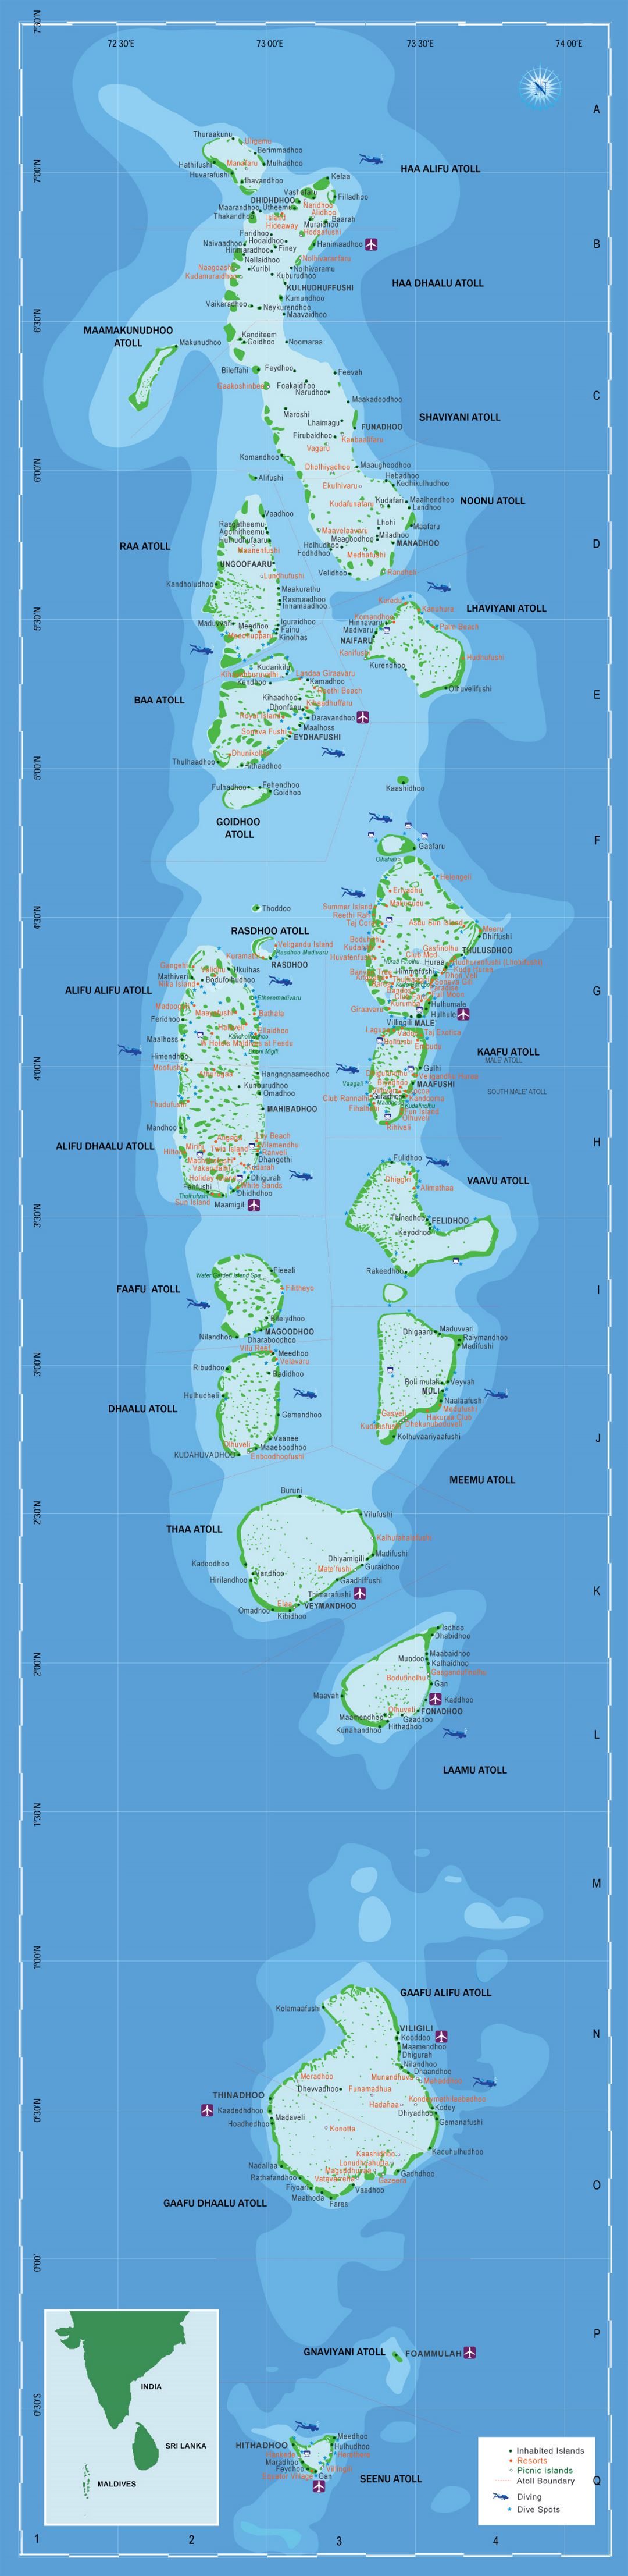 Large tourist map of Maldives